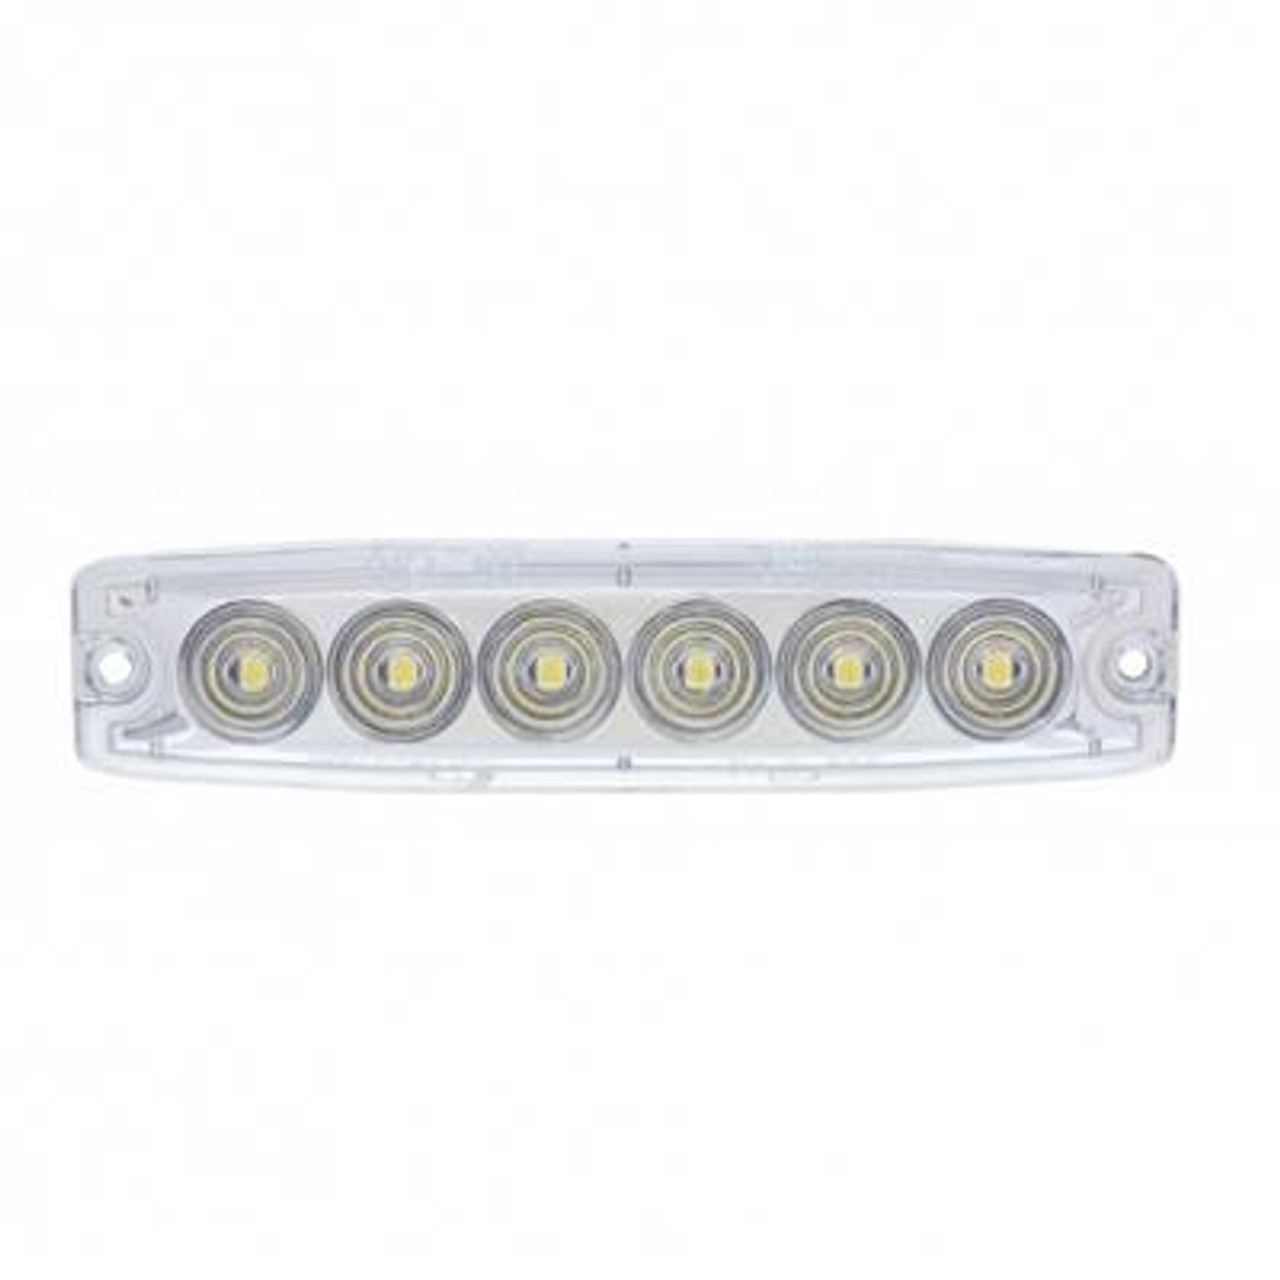 6 High Power LED Super Thin Warning Light - White LED/Clear Lens (Bulk)